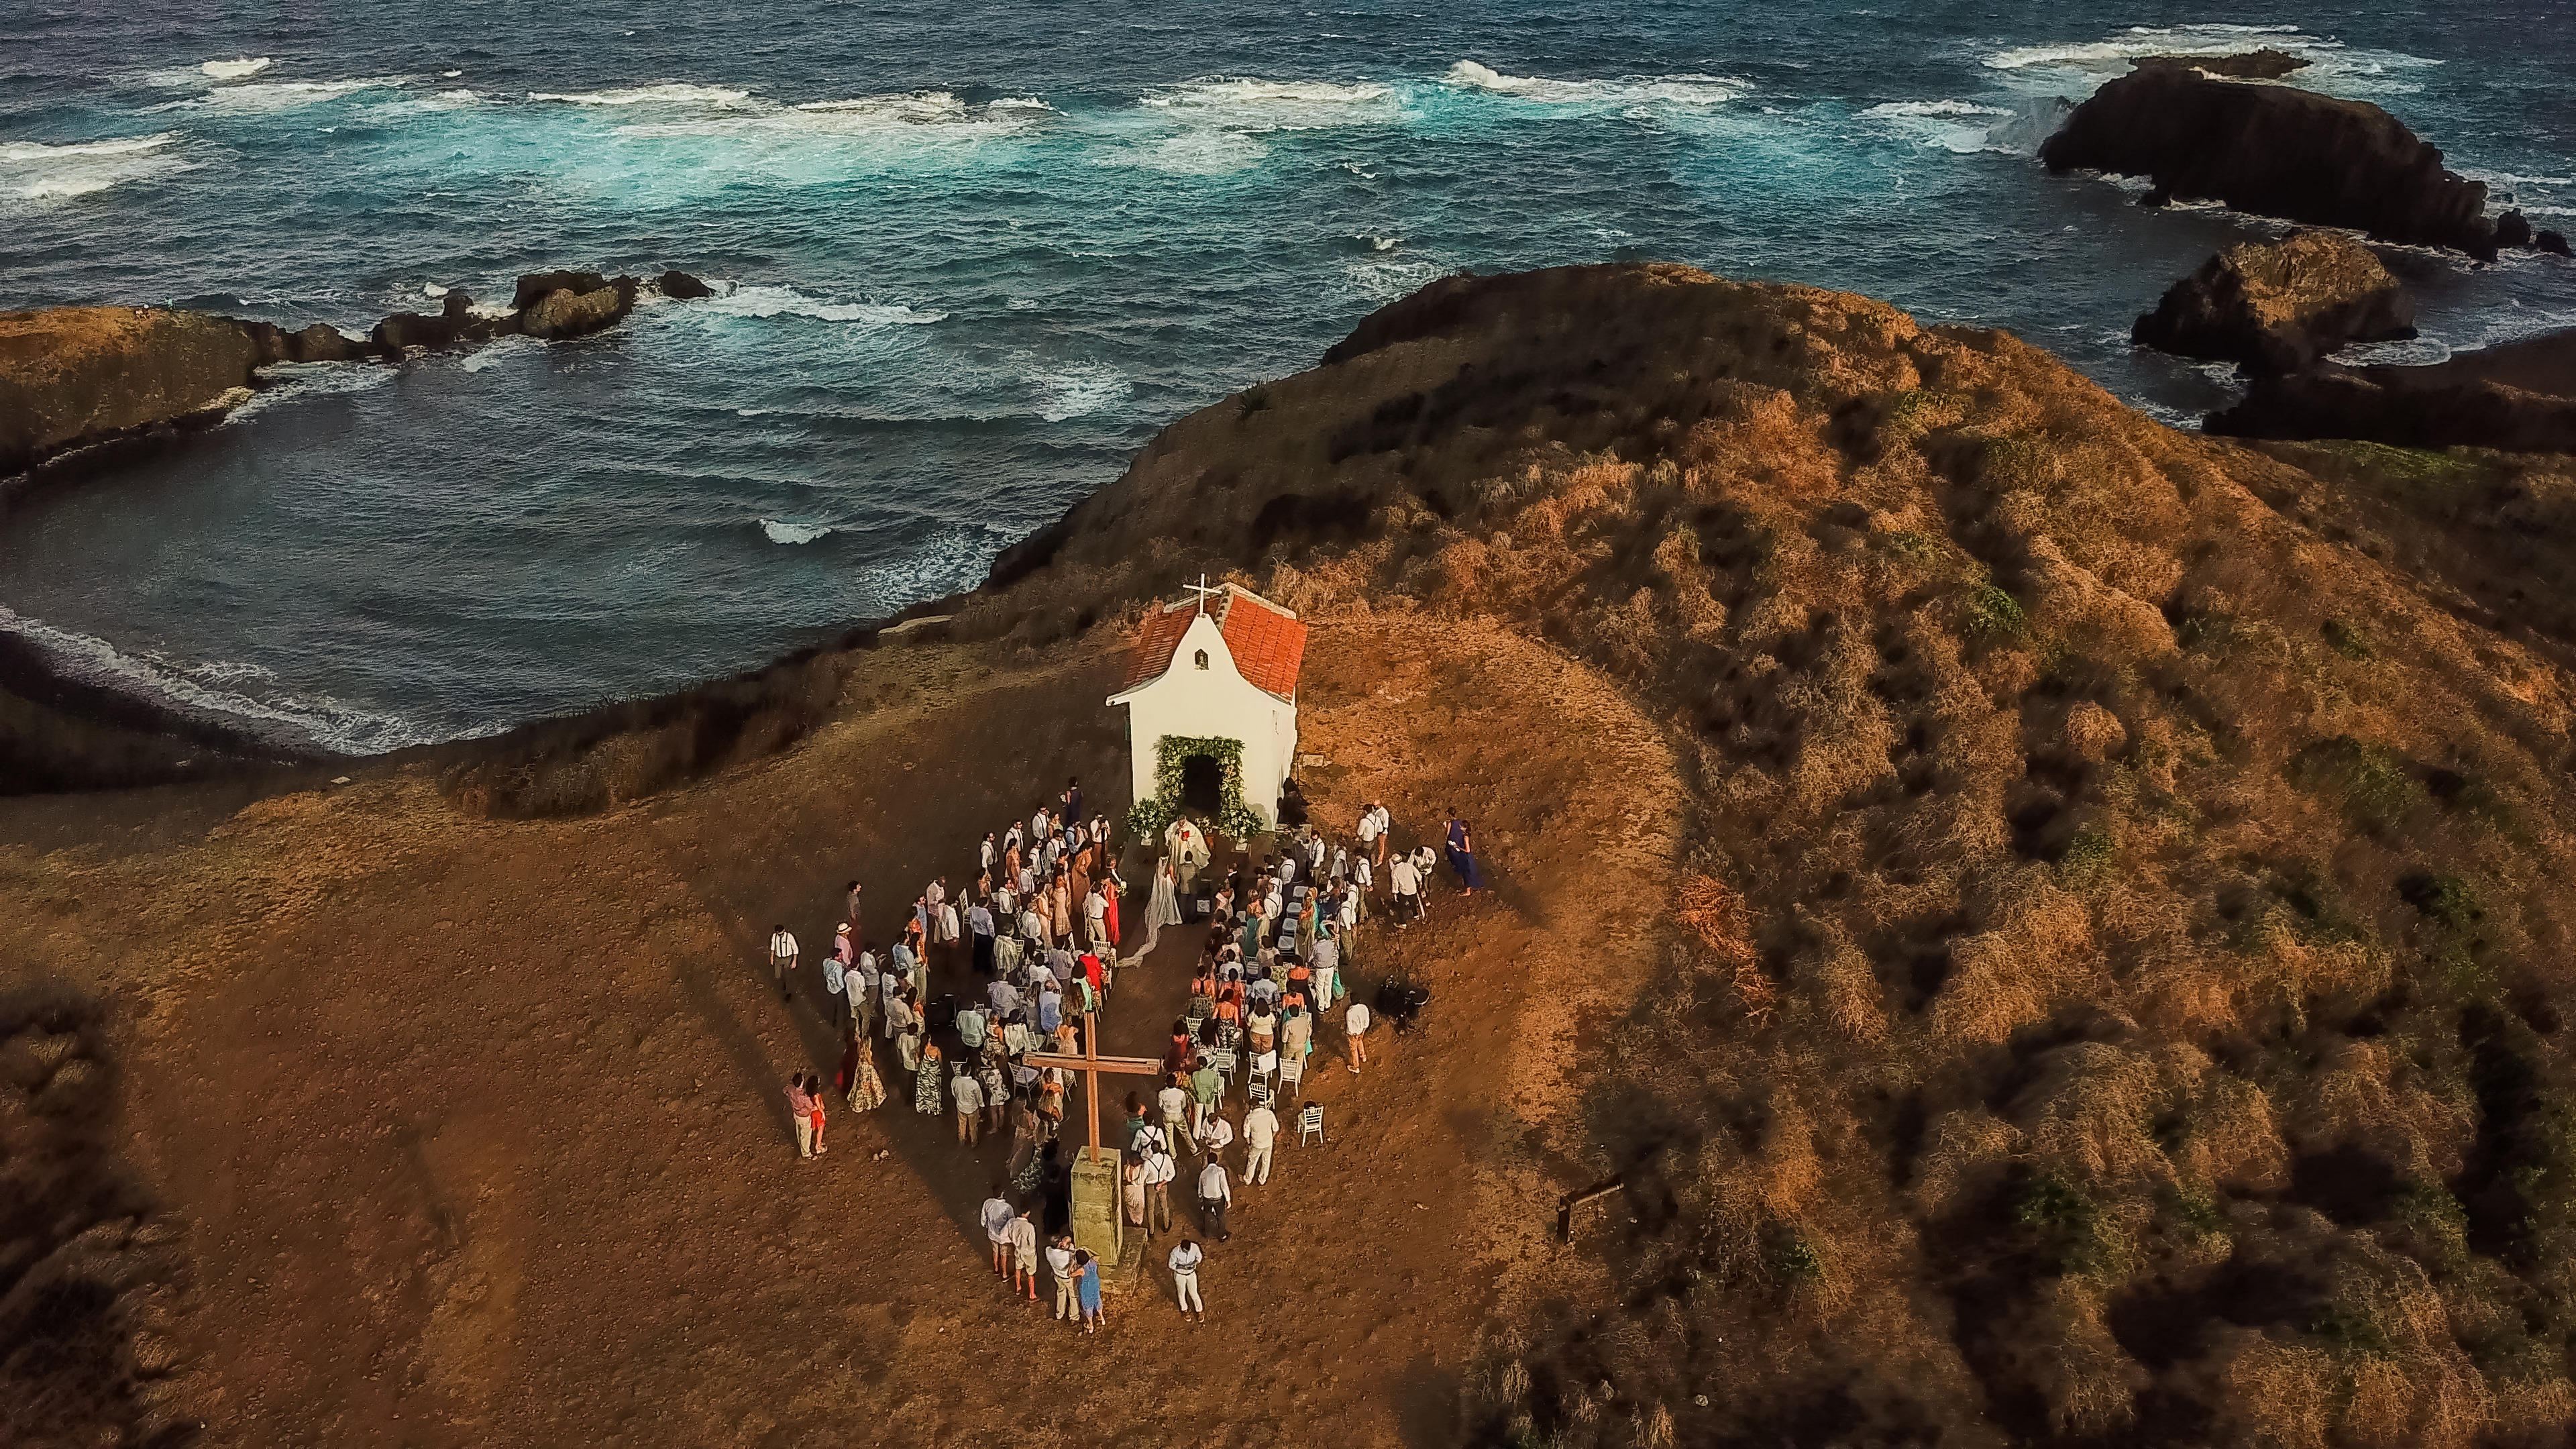 Cerimônia de casamento em capela captada com drone: uma nova perspectiva para imagens do segmento 